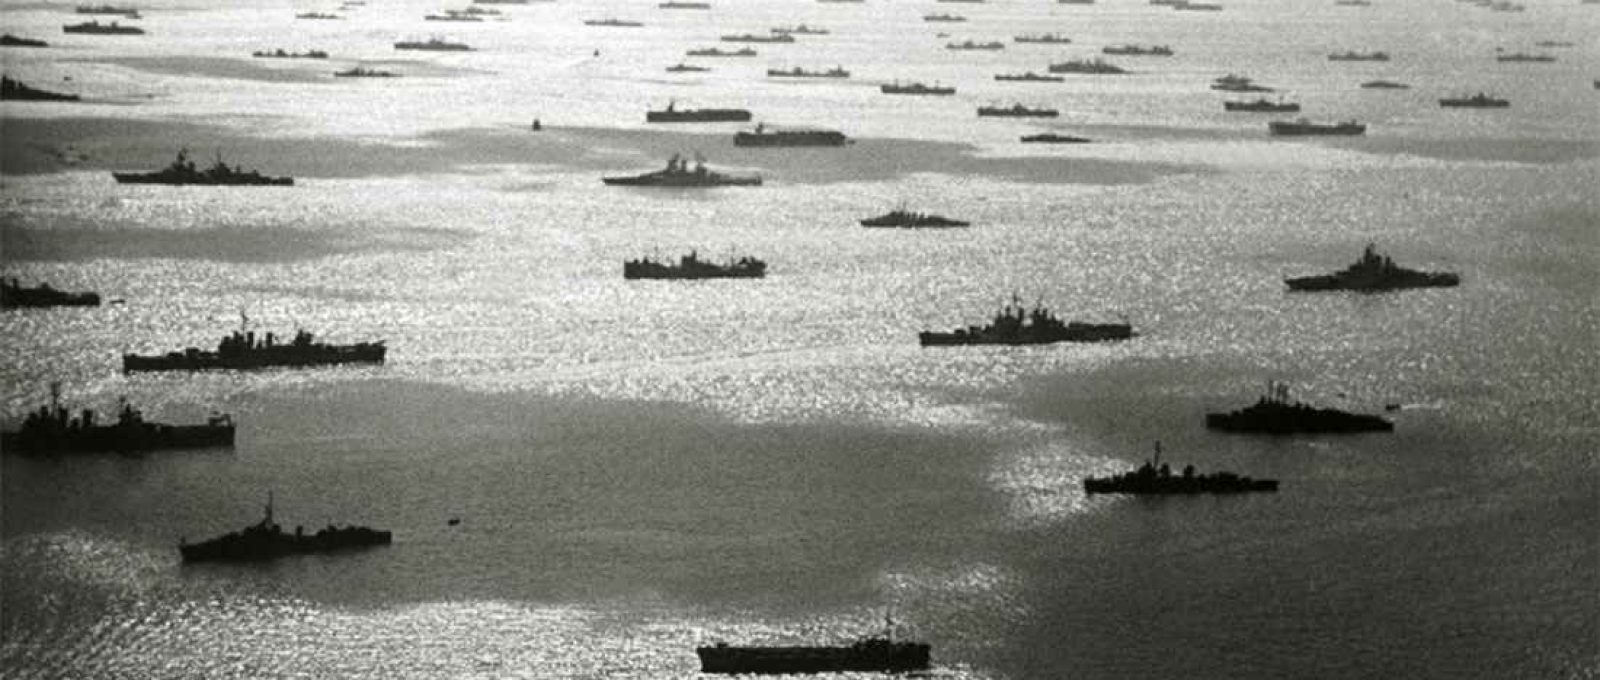 A frota dos EUA no Pacífico durante a campanha das Ilhas Marshall, 1944 (Reddit).